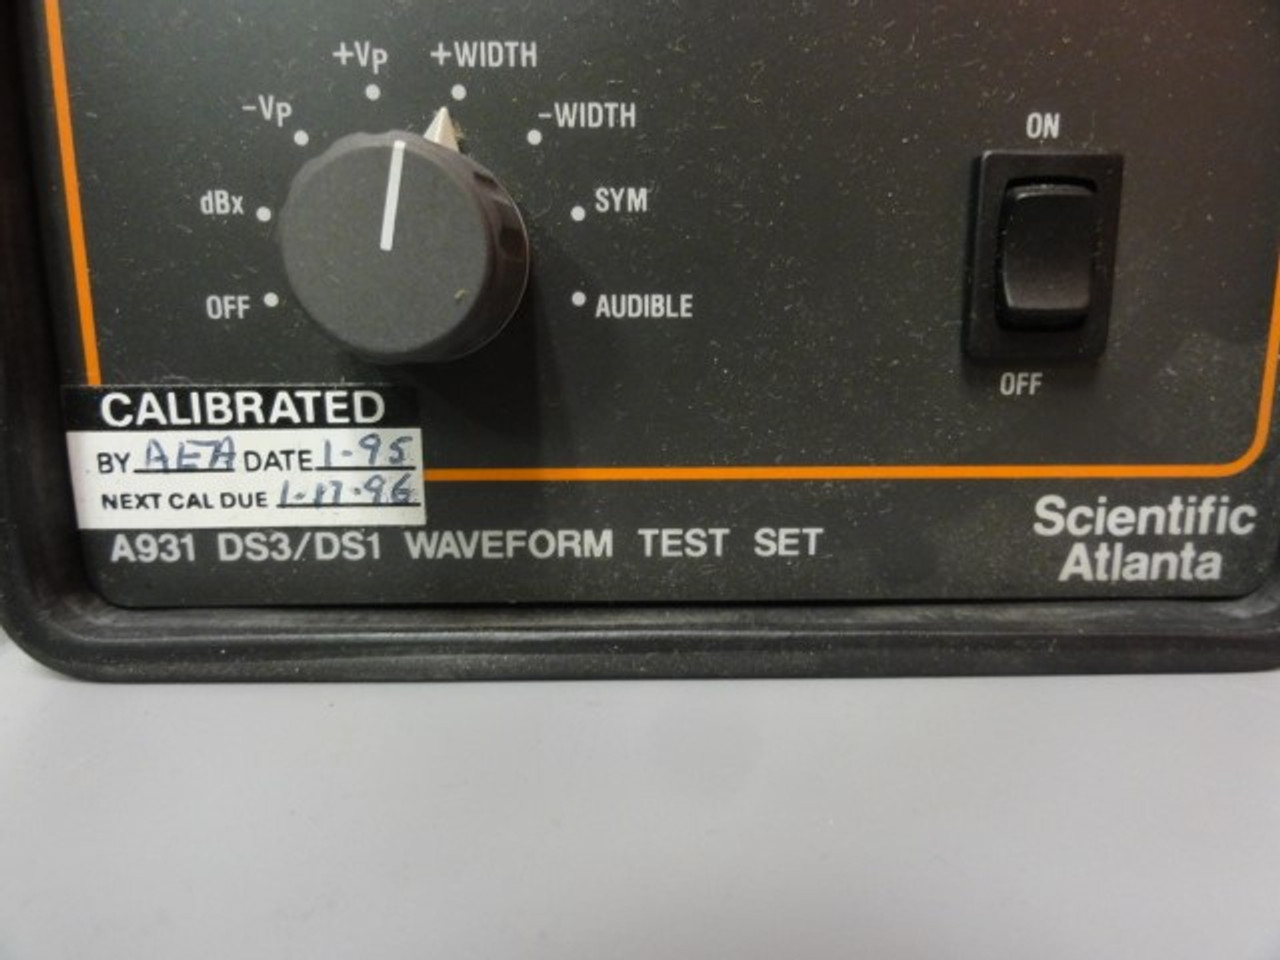 Scientific Atlanta A931 DS3/DS1 Waveform Test Set